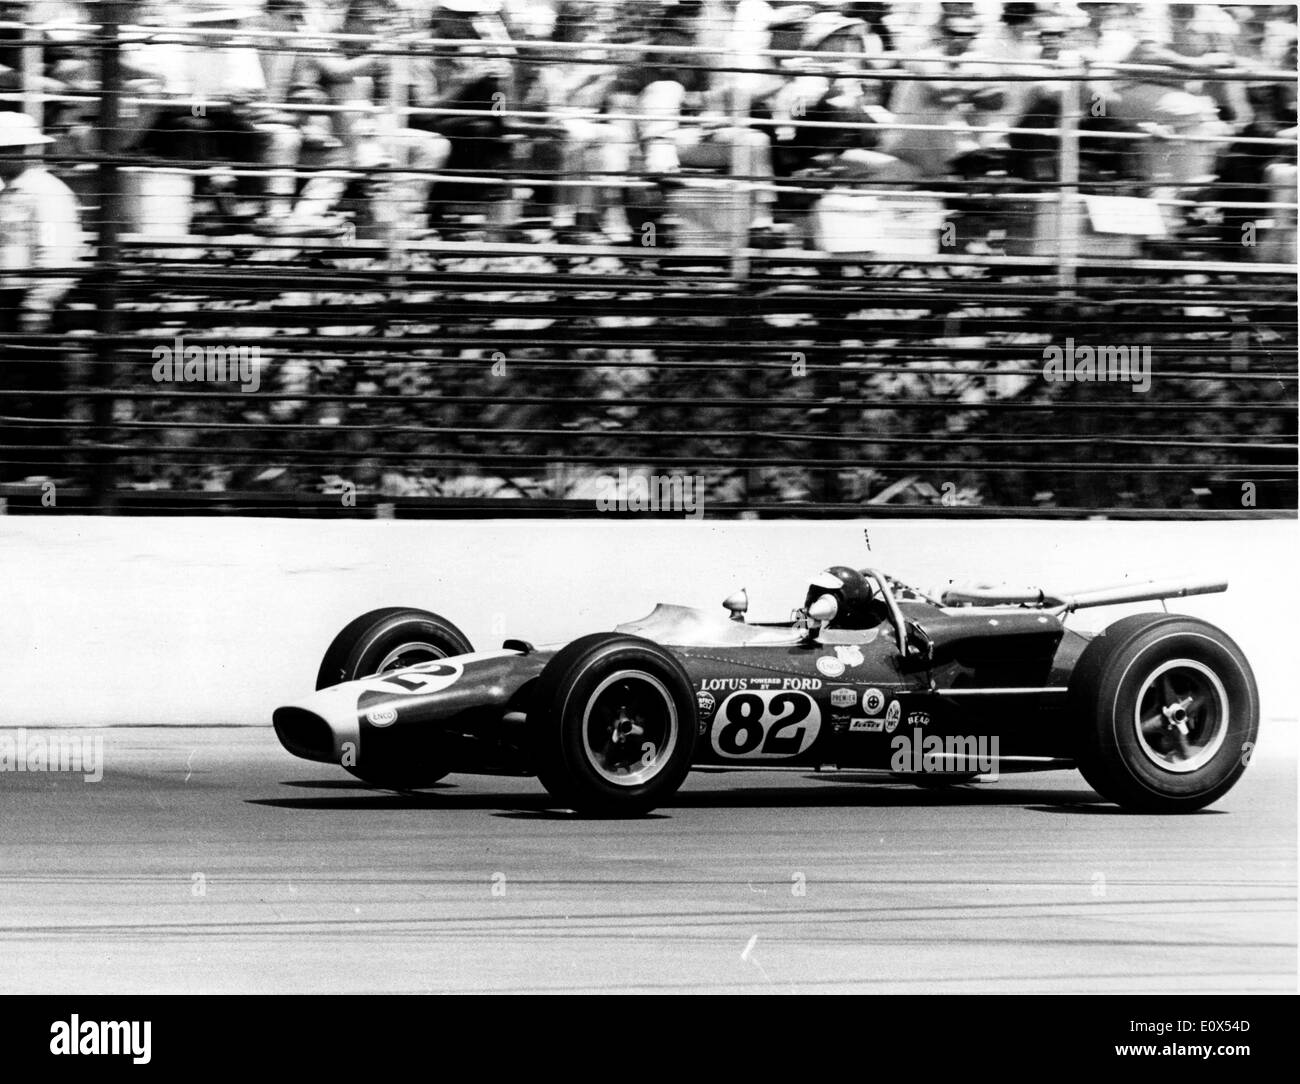 Pilote automobile britannique JIM CLARK conduit une Lotus Ford à l'Indy 500 1965. Banque D'Images